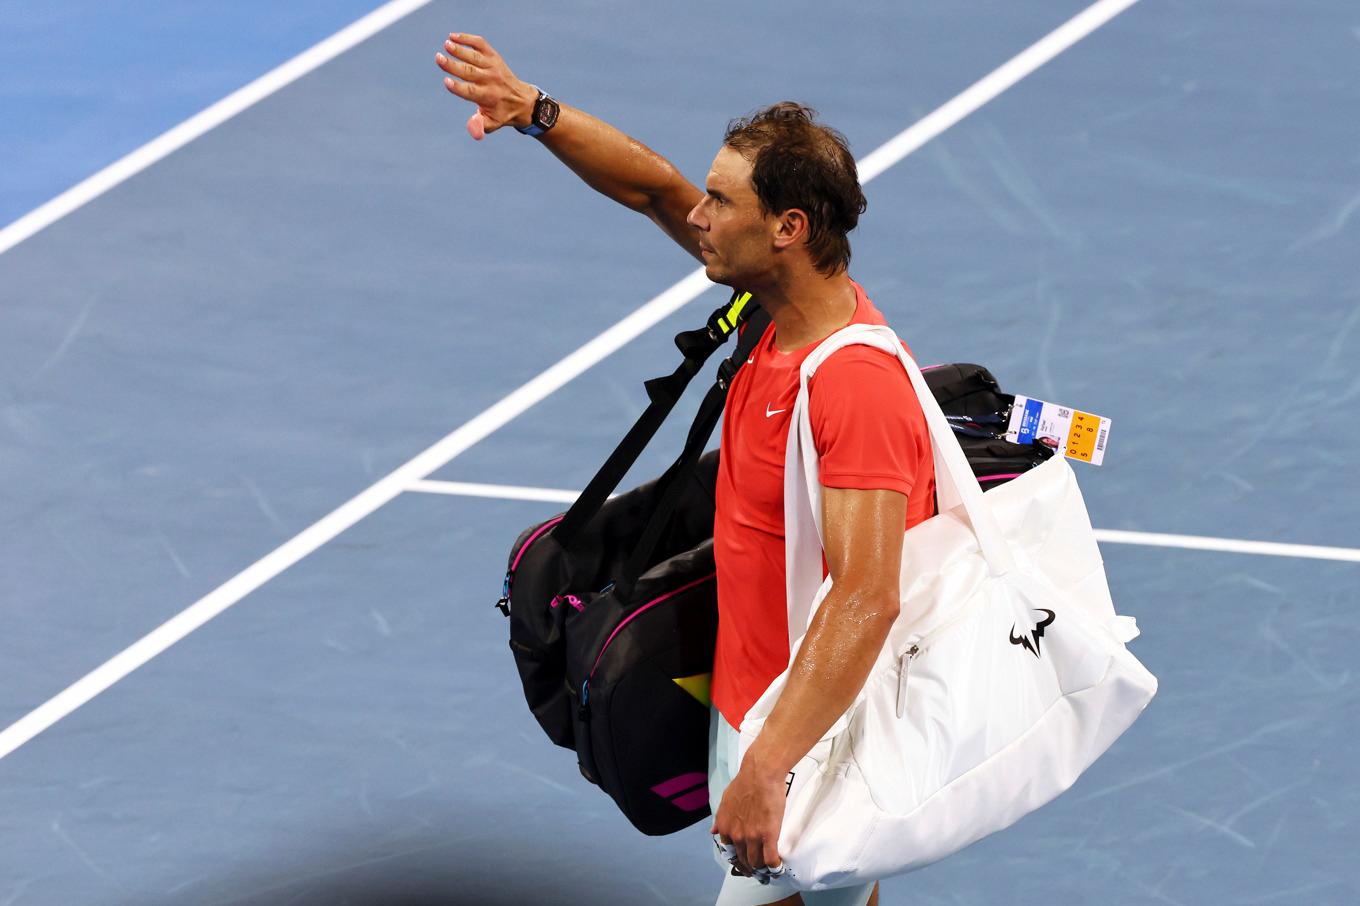 Rafael Nadal. Arkivbild. Foto: Tertius Pickard/AP/TT